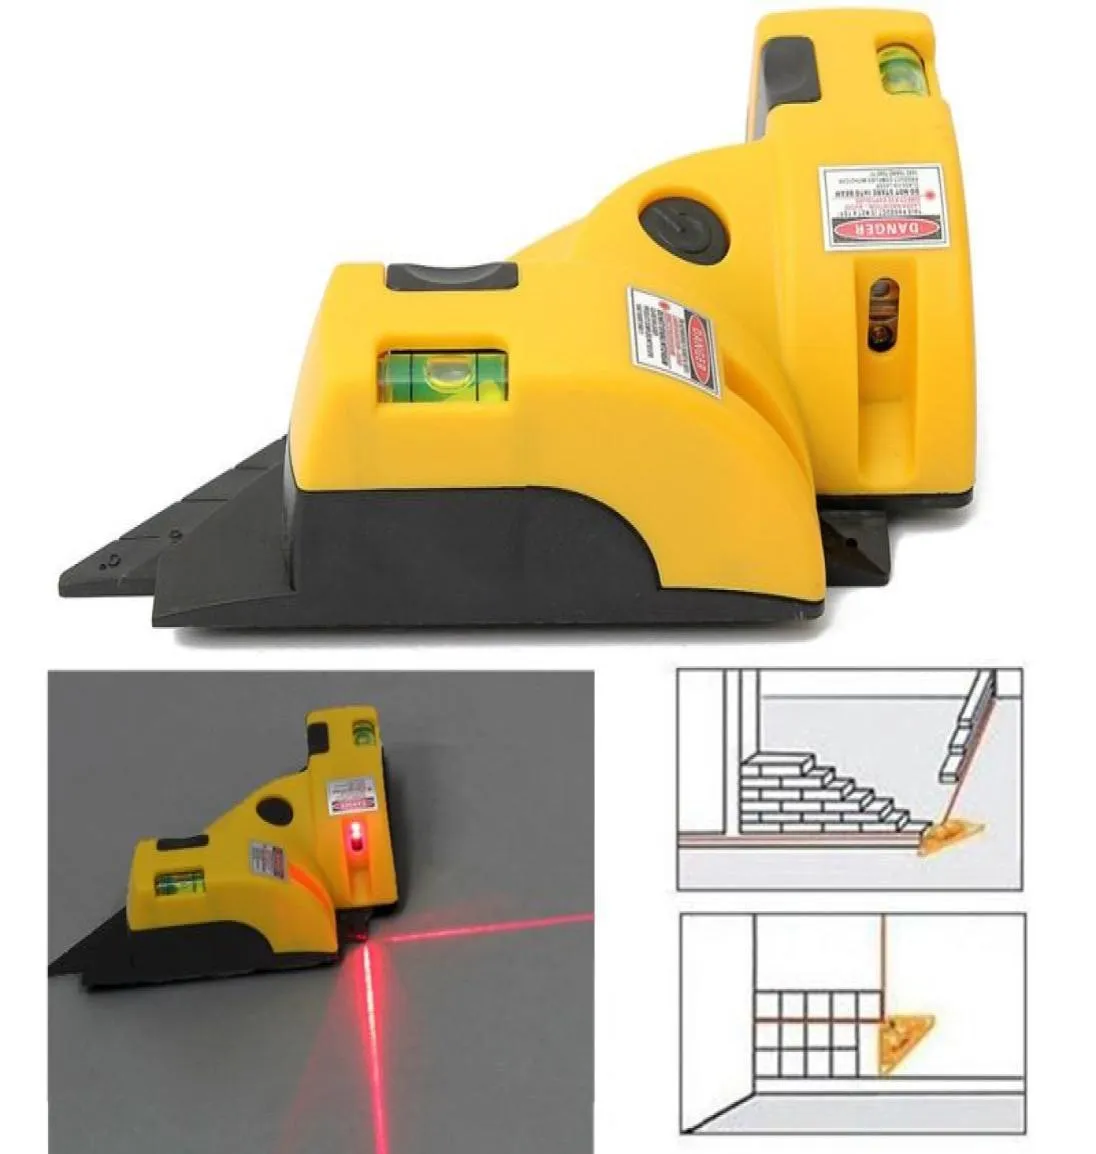 Verkauf Rechten Winkel 90 Grad Platz Laser Level Hohe Qualität Ebene Werkzeug Laser Messung Werkzeug Level Laser Bau tools4528154